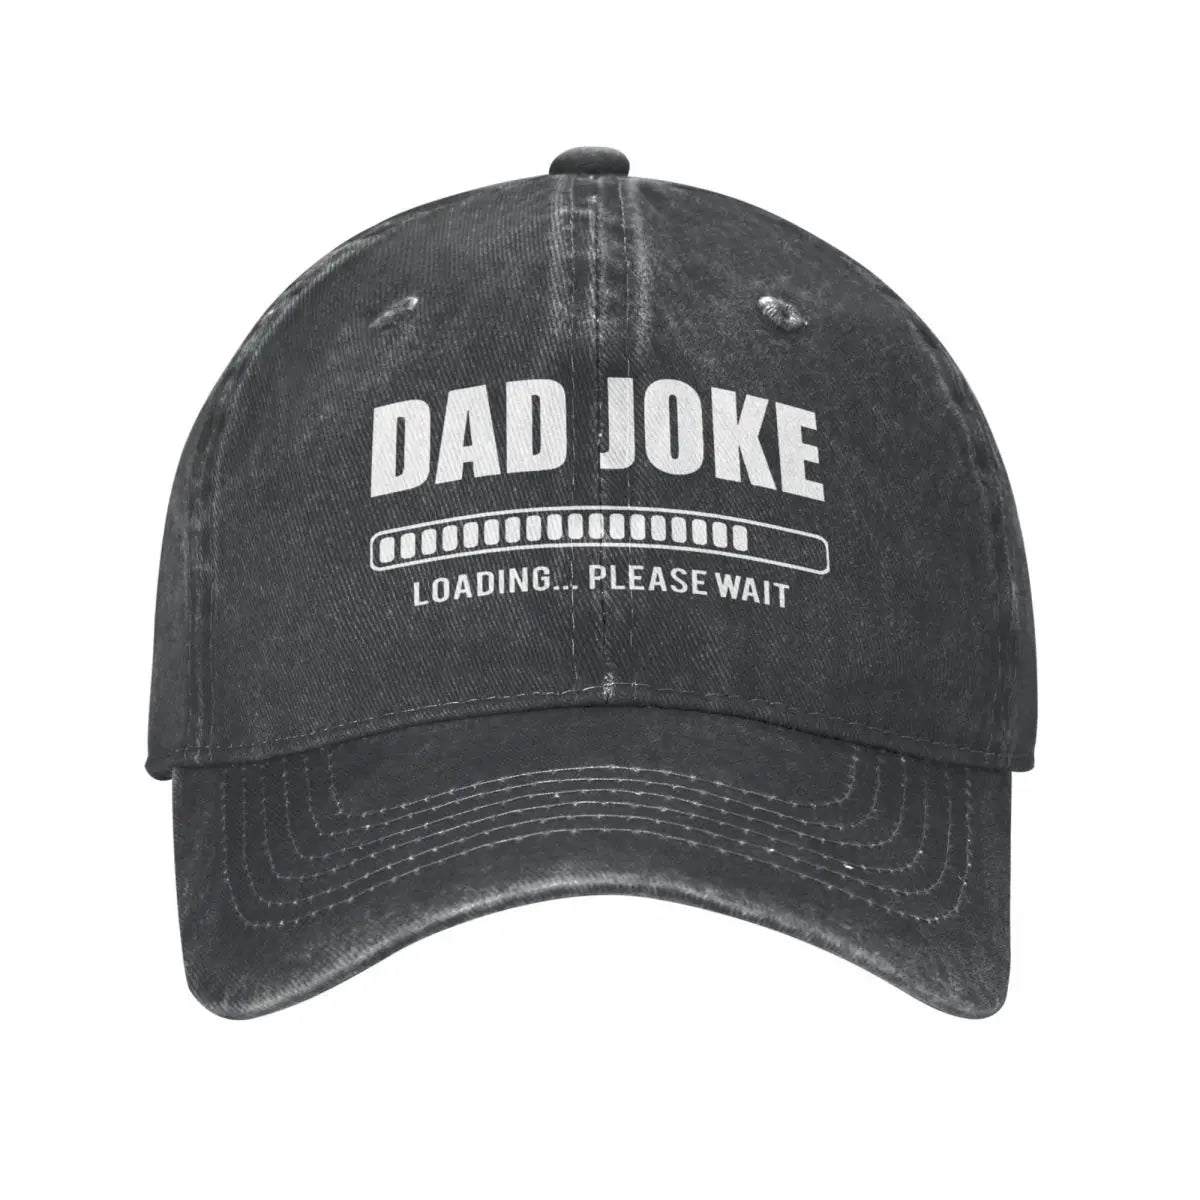 Vintage Style Dad Joke Loading Baseball Cap - hats from Dear Cece - Just £16.99! Shop now at Dear Cece